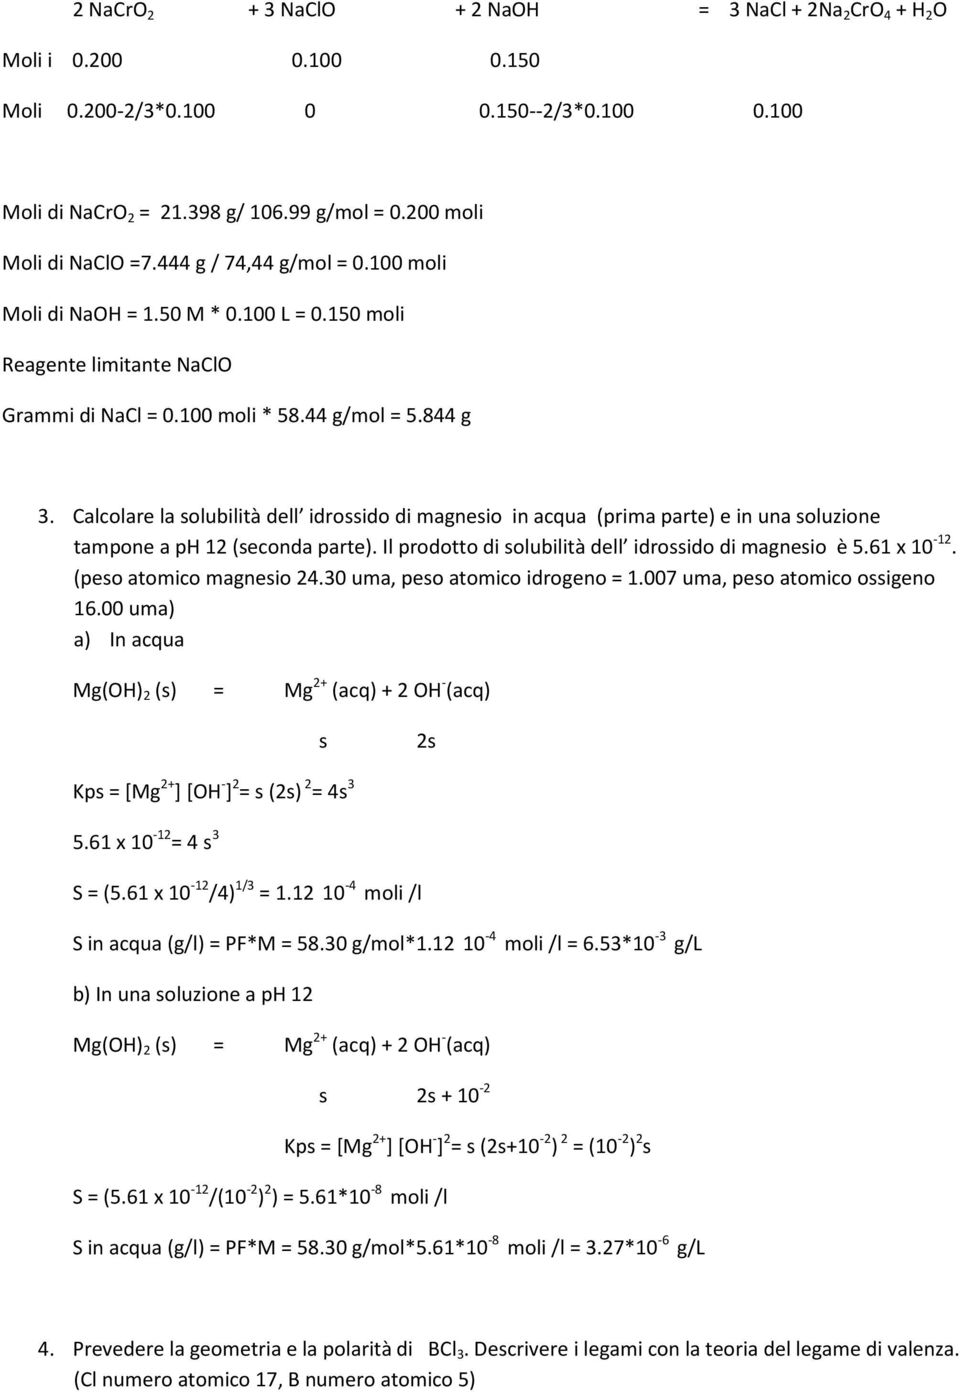 Calcolare la solubilità dell idrossido di magnesio in acqua (prima parte) e in una soluzione tampone a ph 12 (seconda parte). Il prodotto di solubilità dell idrossido di magnesio è 5.61 x 10-12.